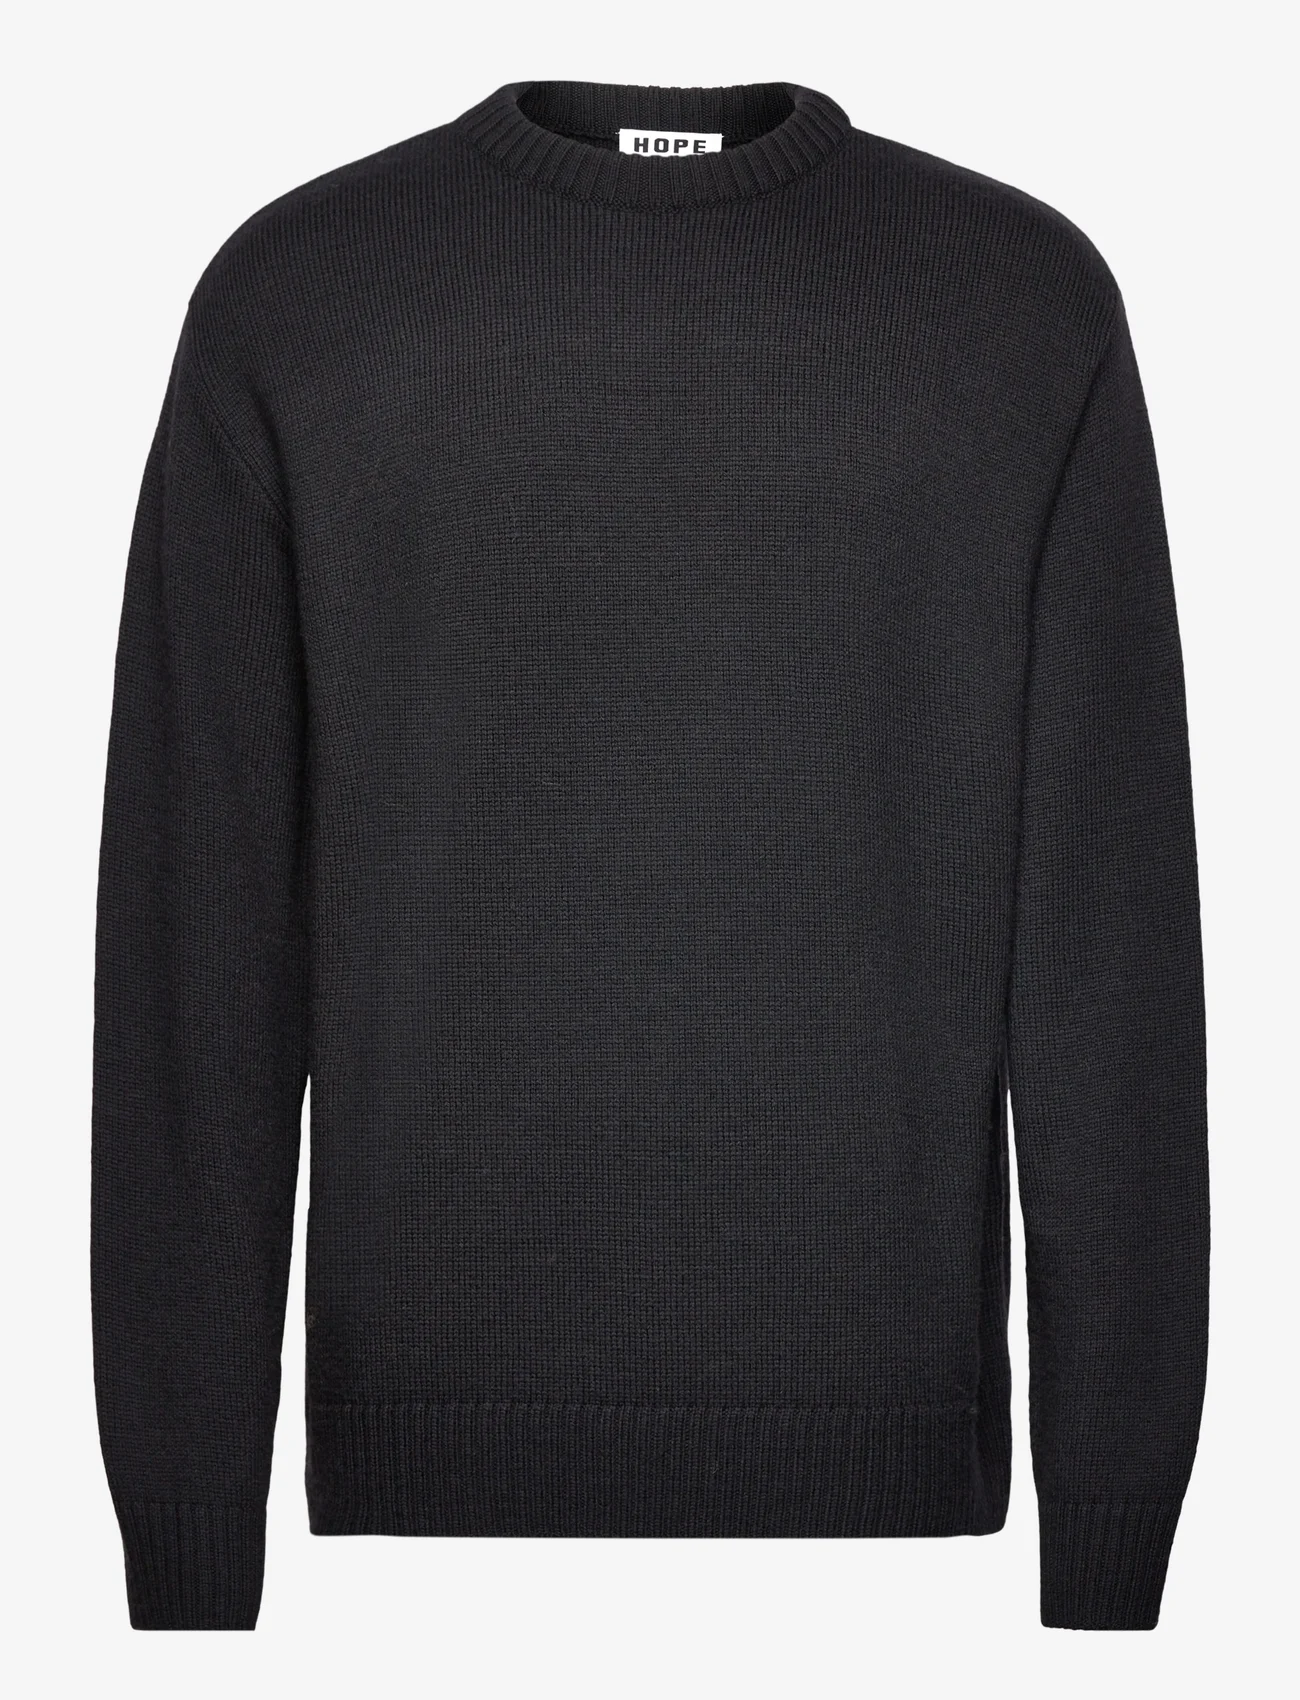 Hope - Oversized Merino Wool Sweater - rundhals - black - 0